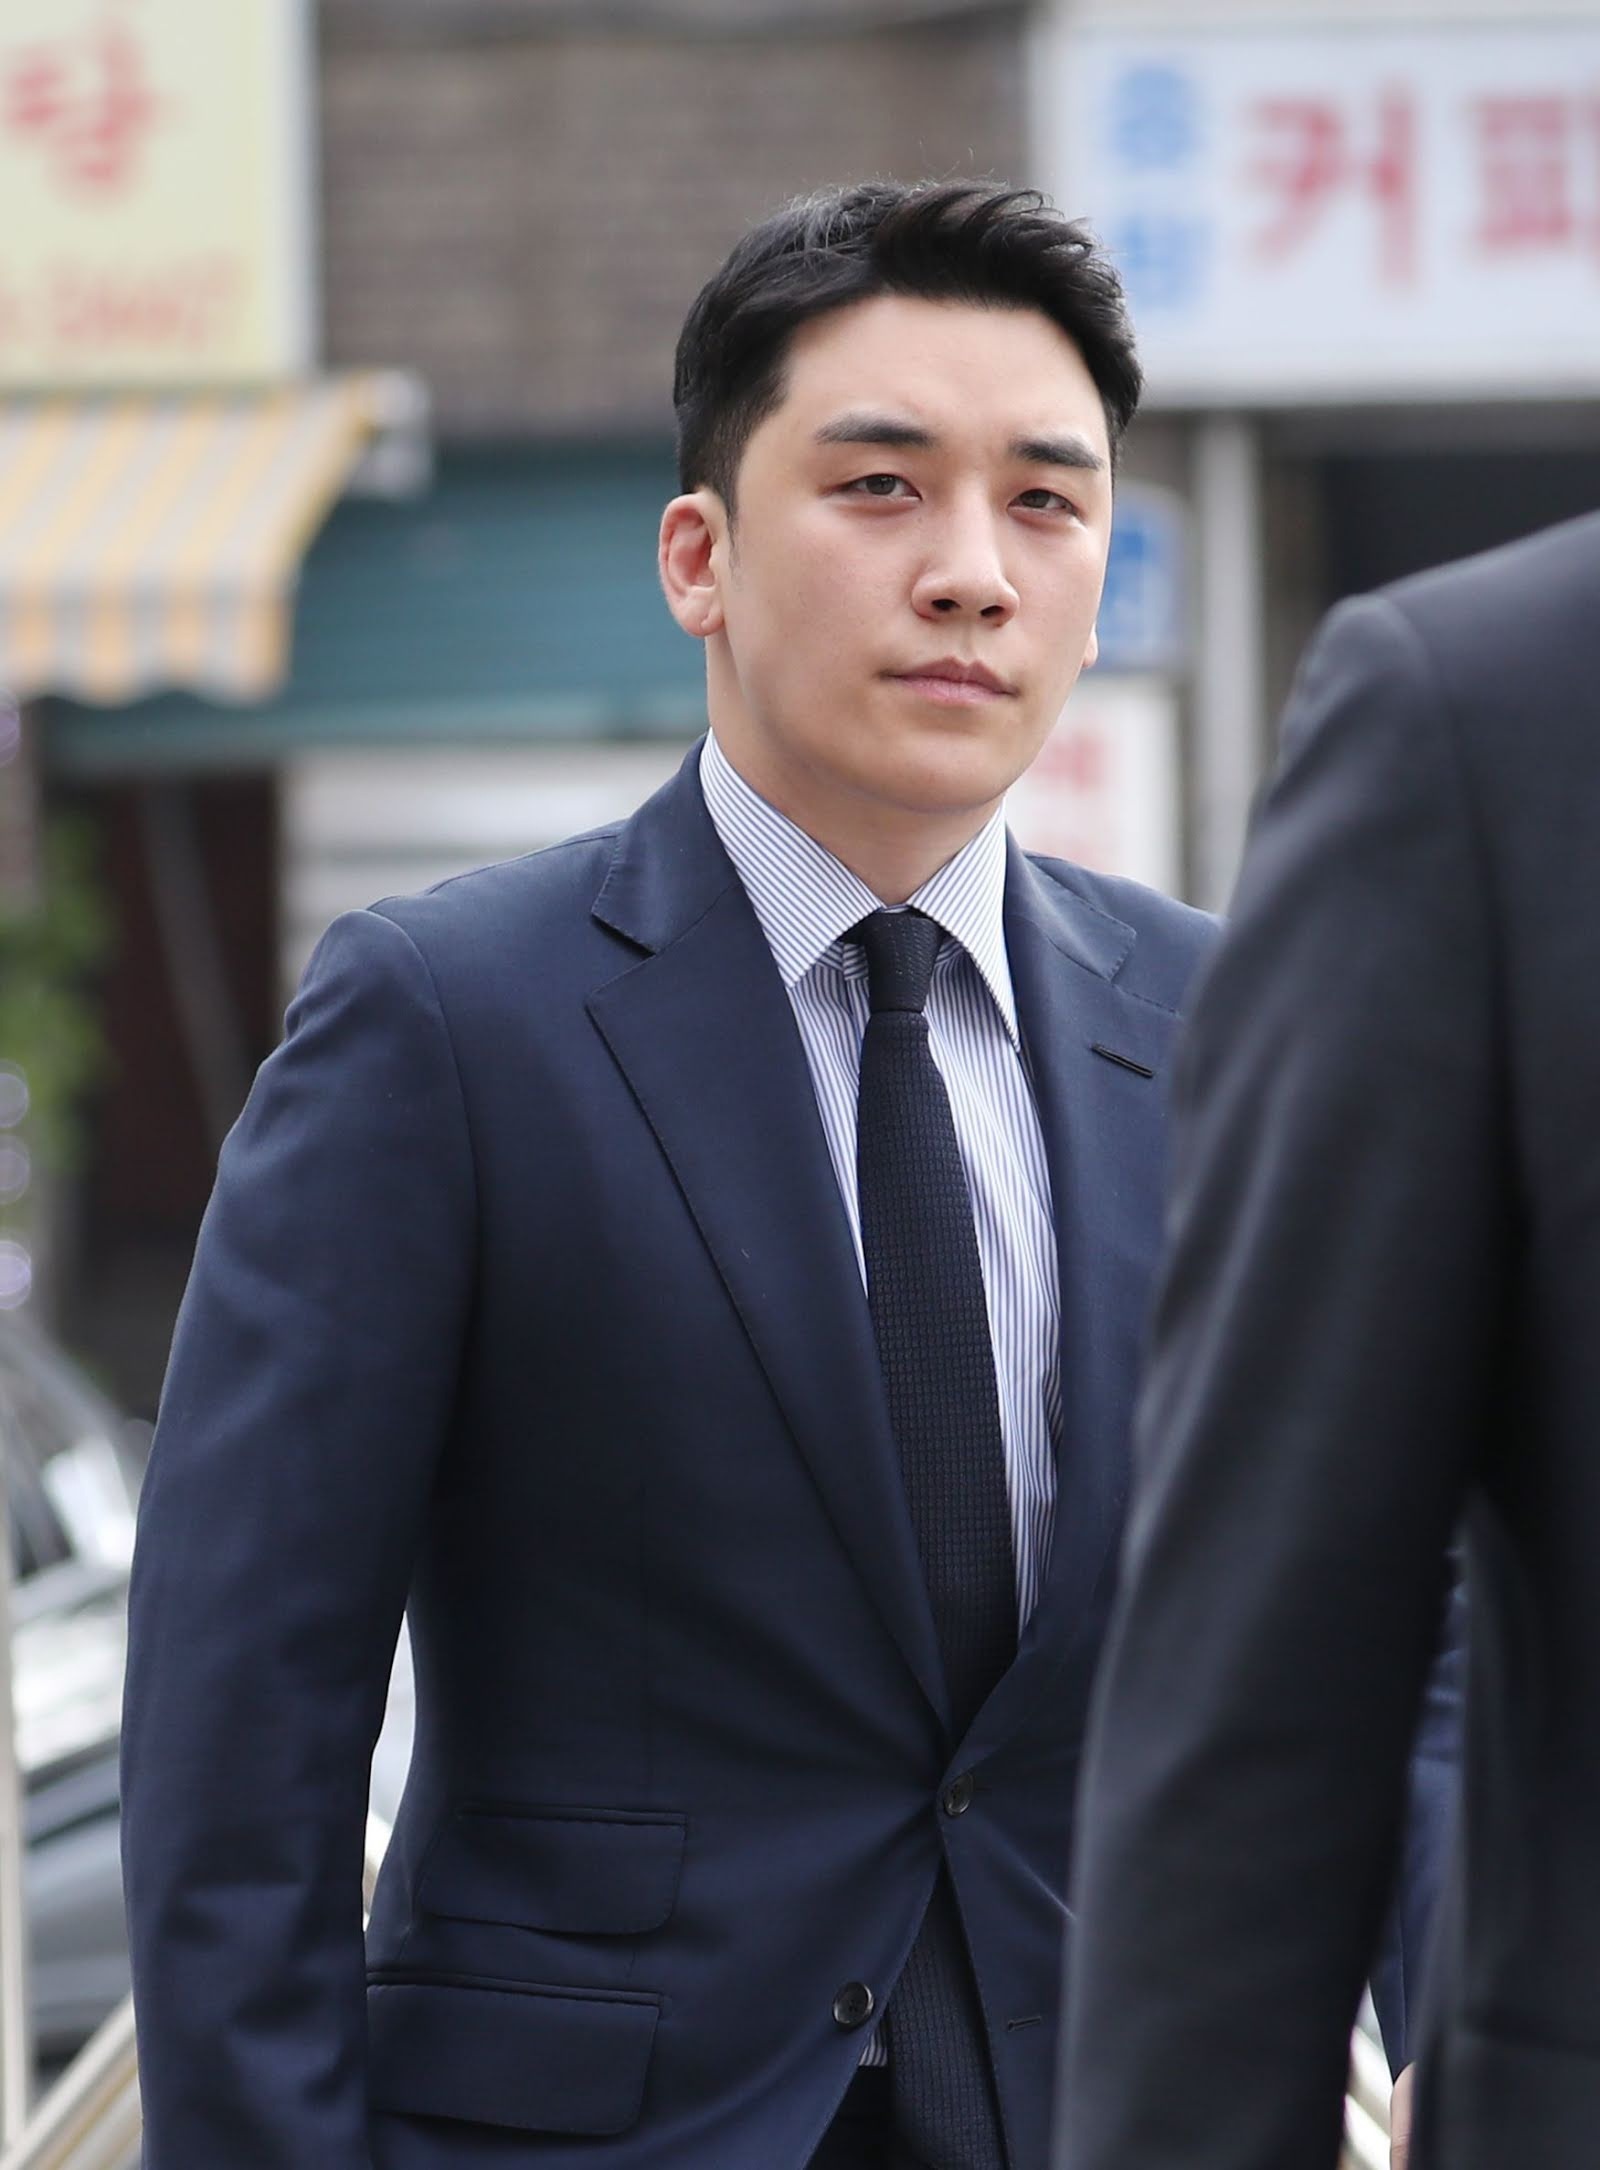 Tiết lộ cáo buộc gây sốc của Seungri sau khi ra tù: Hết môi giới mại dâm đến quay phim phụ nữ bất hợp pháp - Ảnh 2.